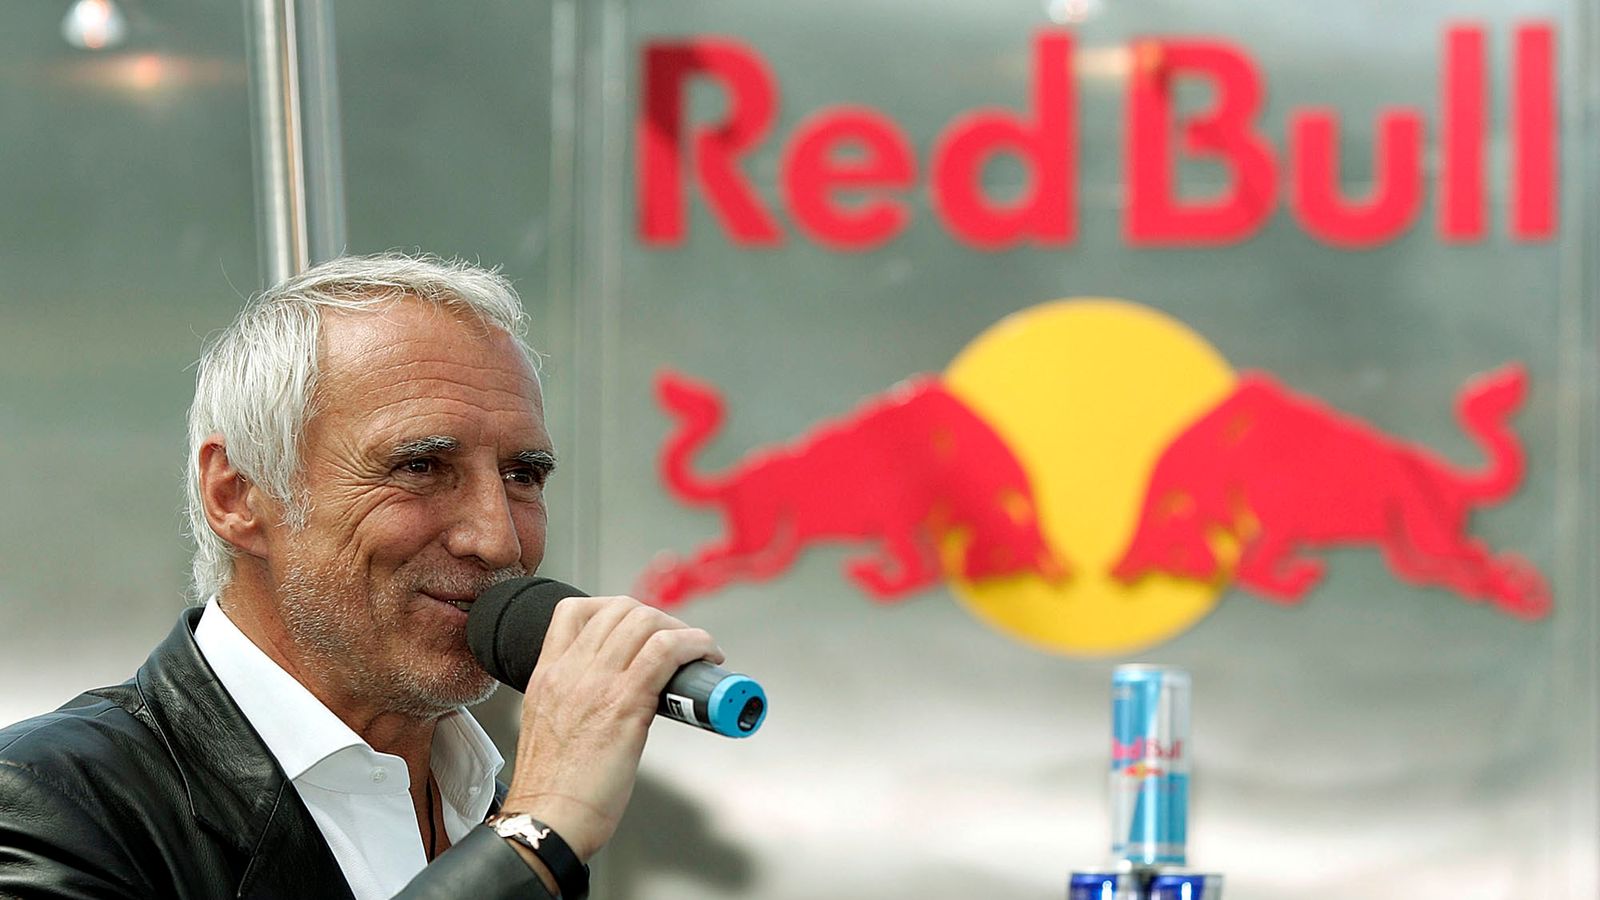 Red Bull の創設者で億万長者のディートリッヒ・マテシッツが 78 歳で死去 | 世界のニュース